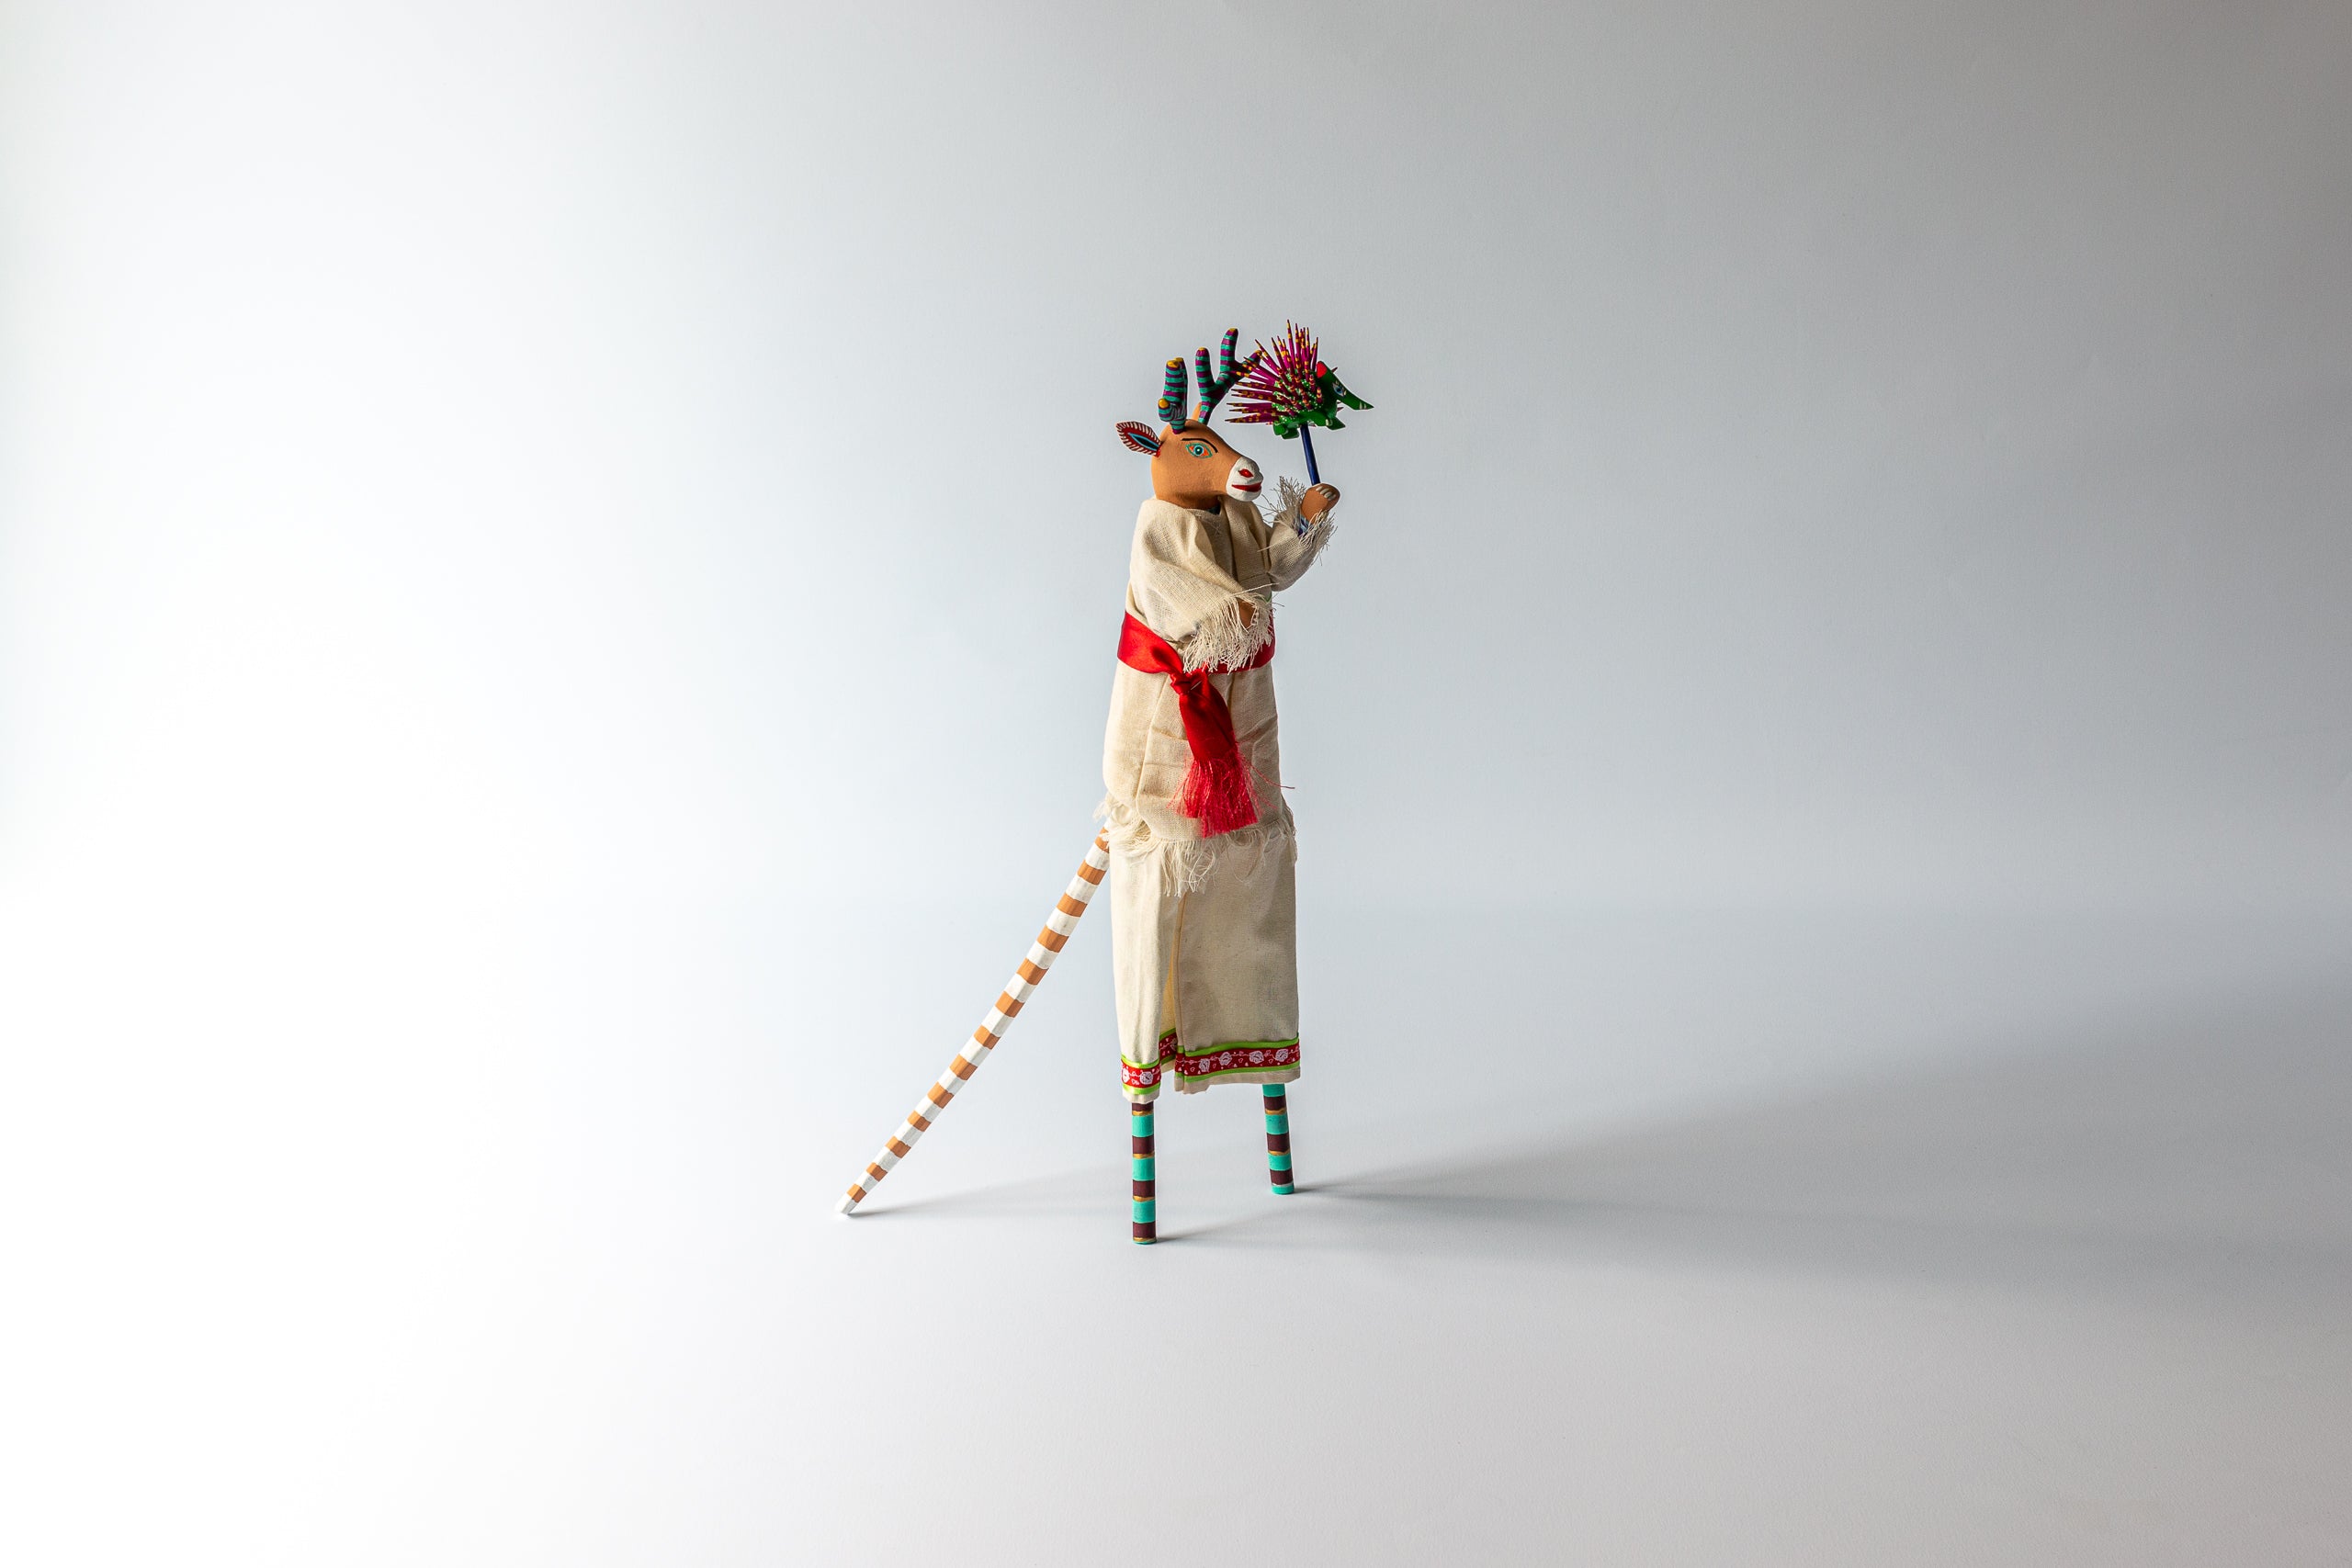 Stilt dancer by Martin Melchor Angeles in an off-white dress.